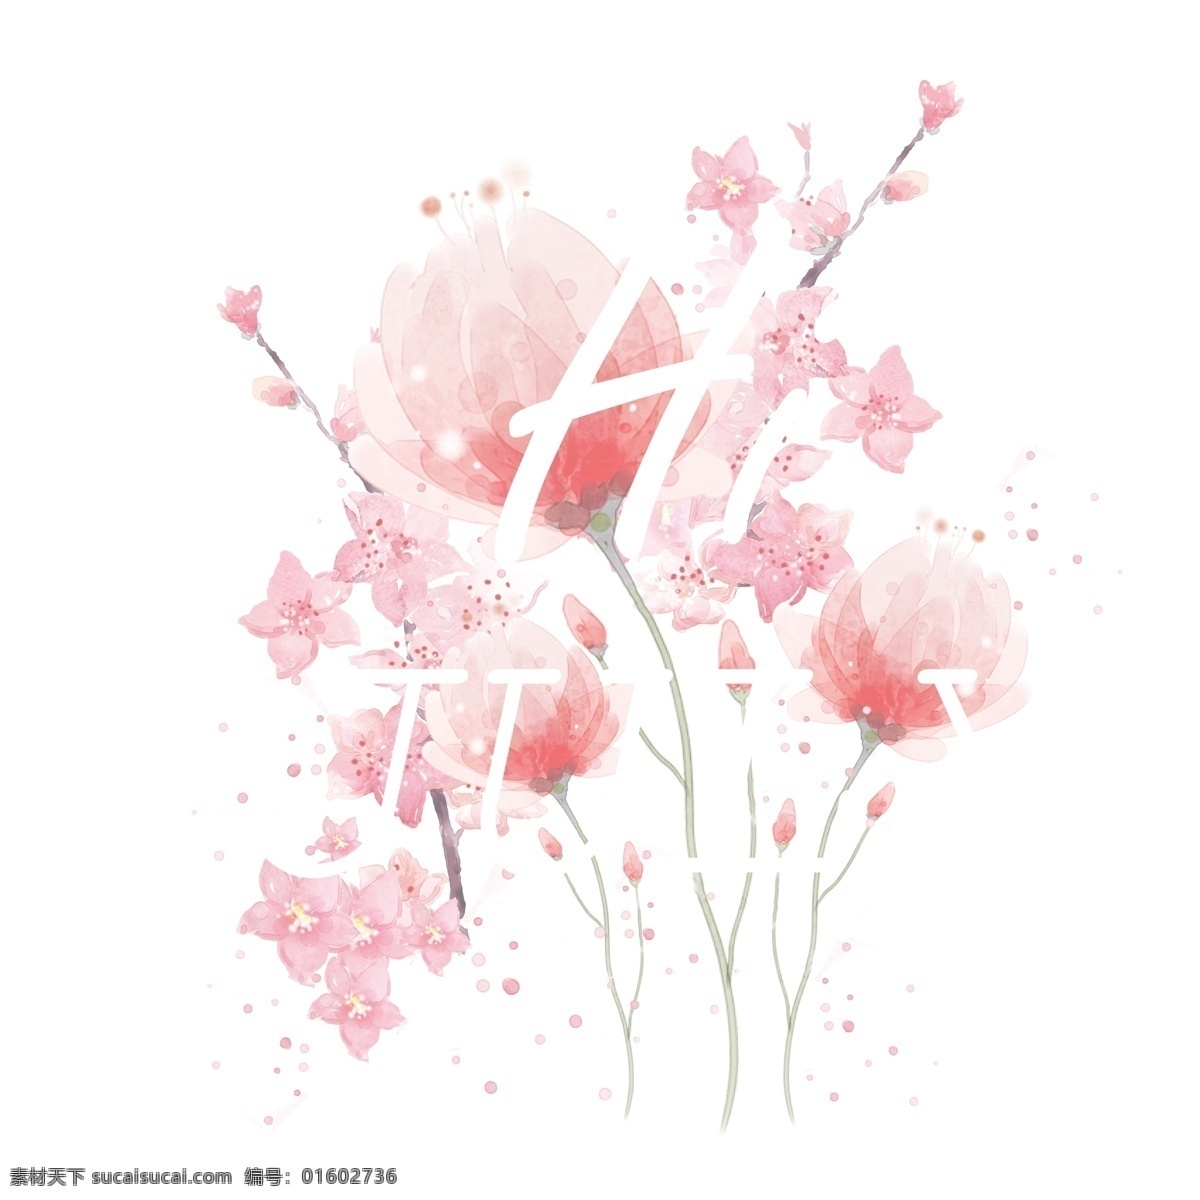 粉红色 花朵 免 抠 图 英文 卡通手绘 手绘艺术 花朵开放 背景 粉红色花朵